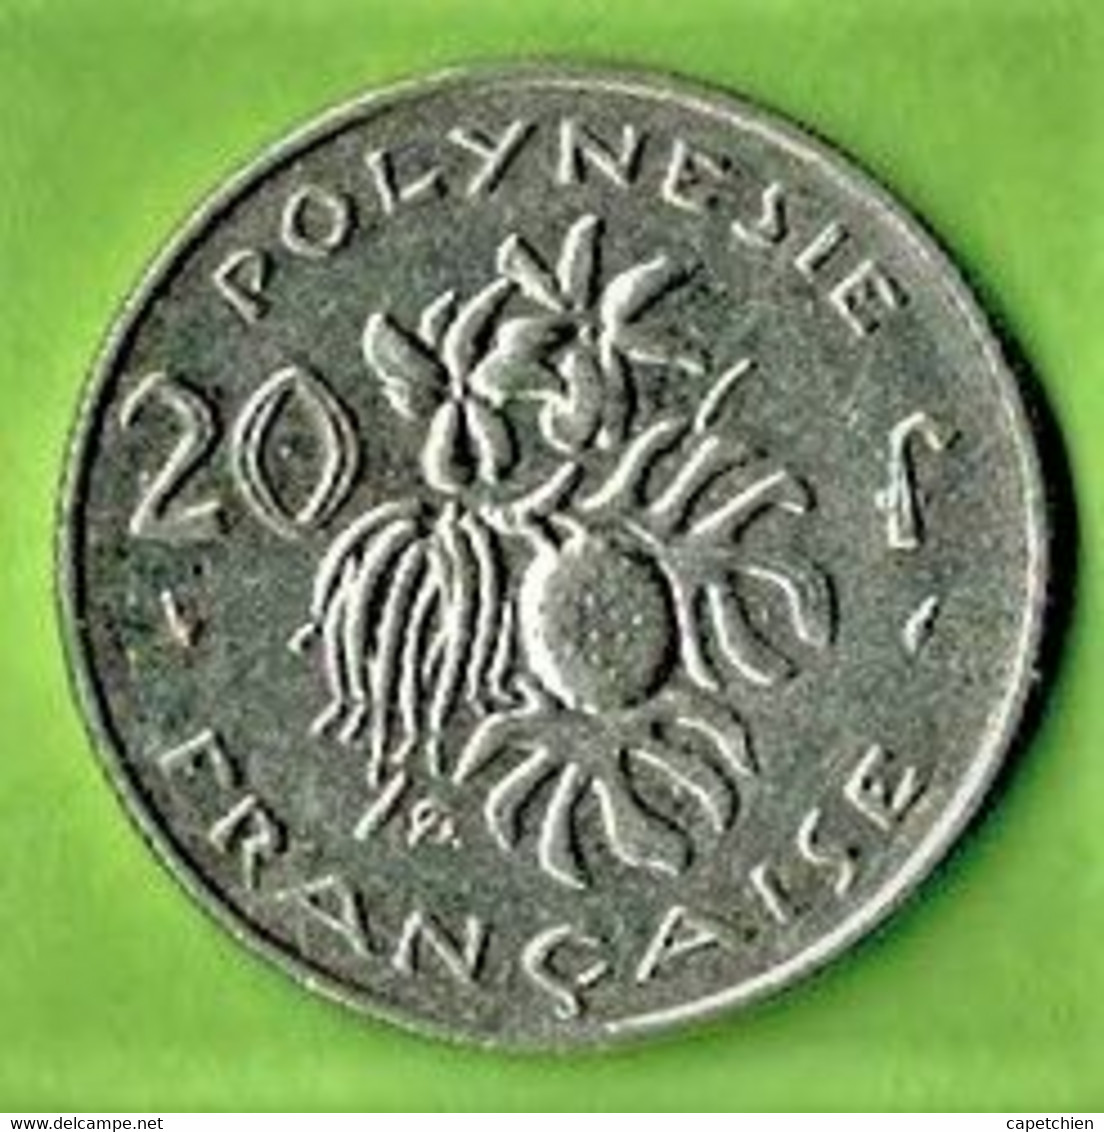 POLYNESIE FRANCAISE / 20 FRANCS / 1983 / - Comoren